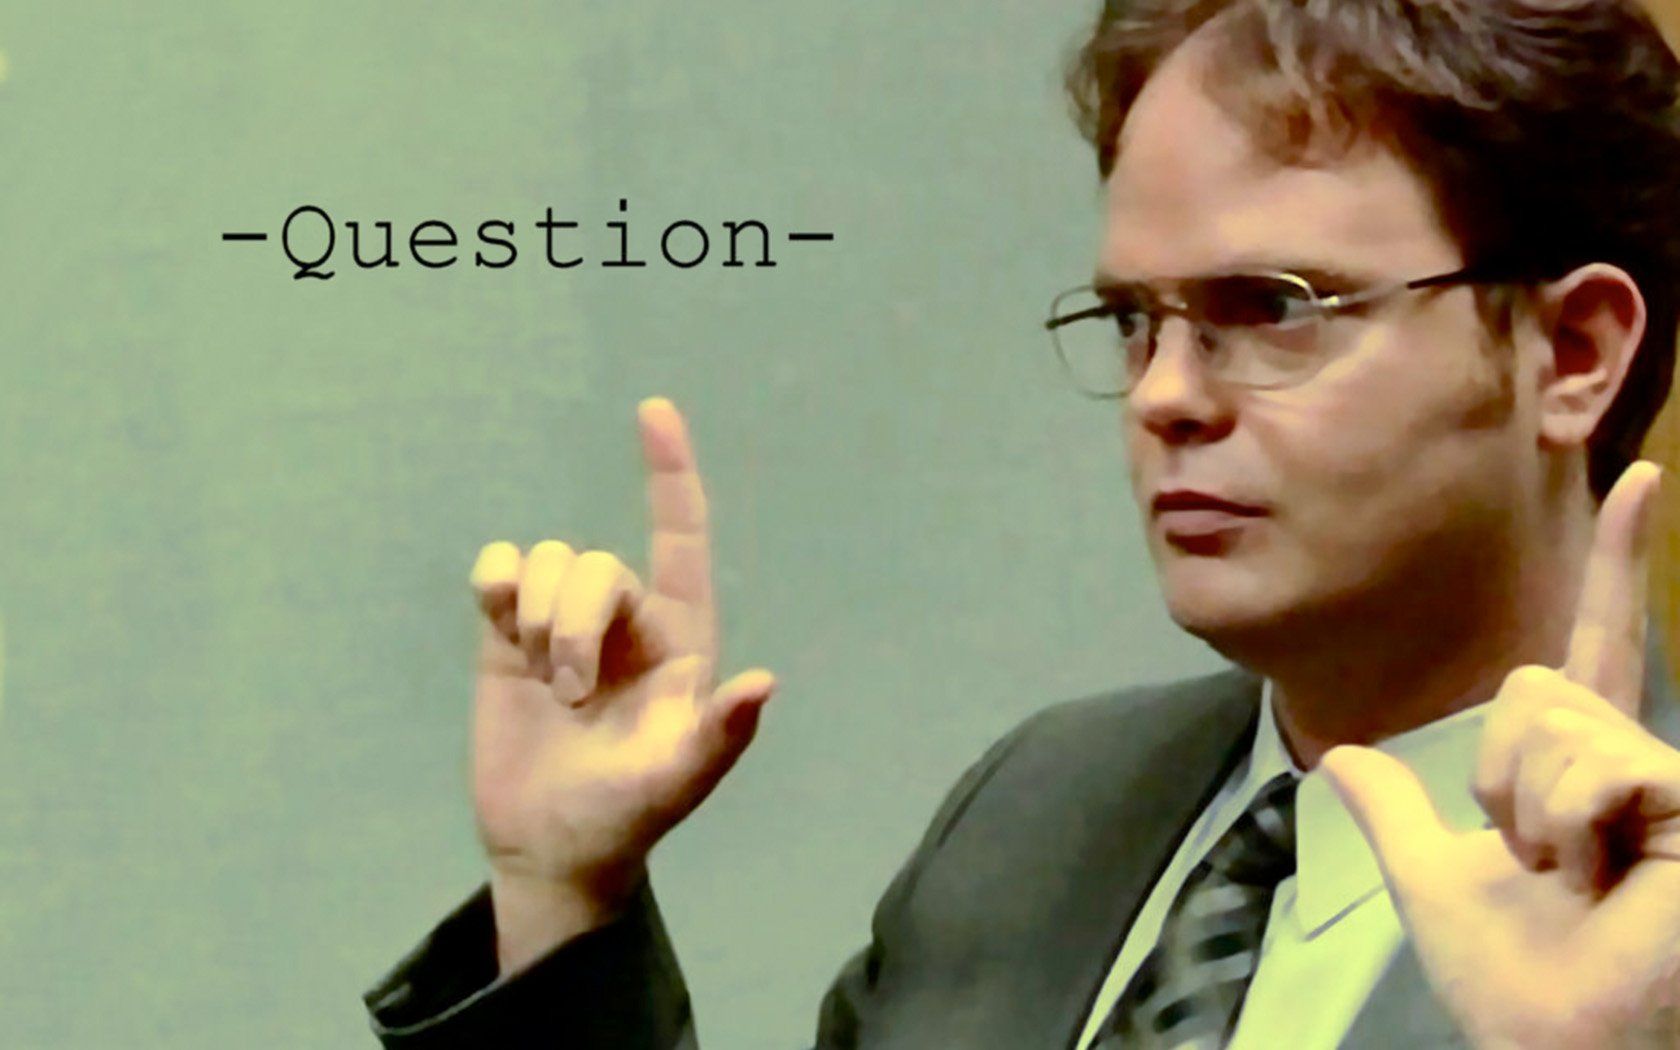 The Office Dwight Schrute Rainn Wilson question wallpaperx1050